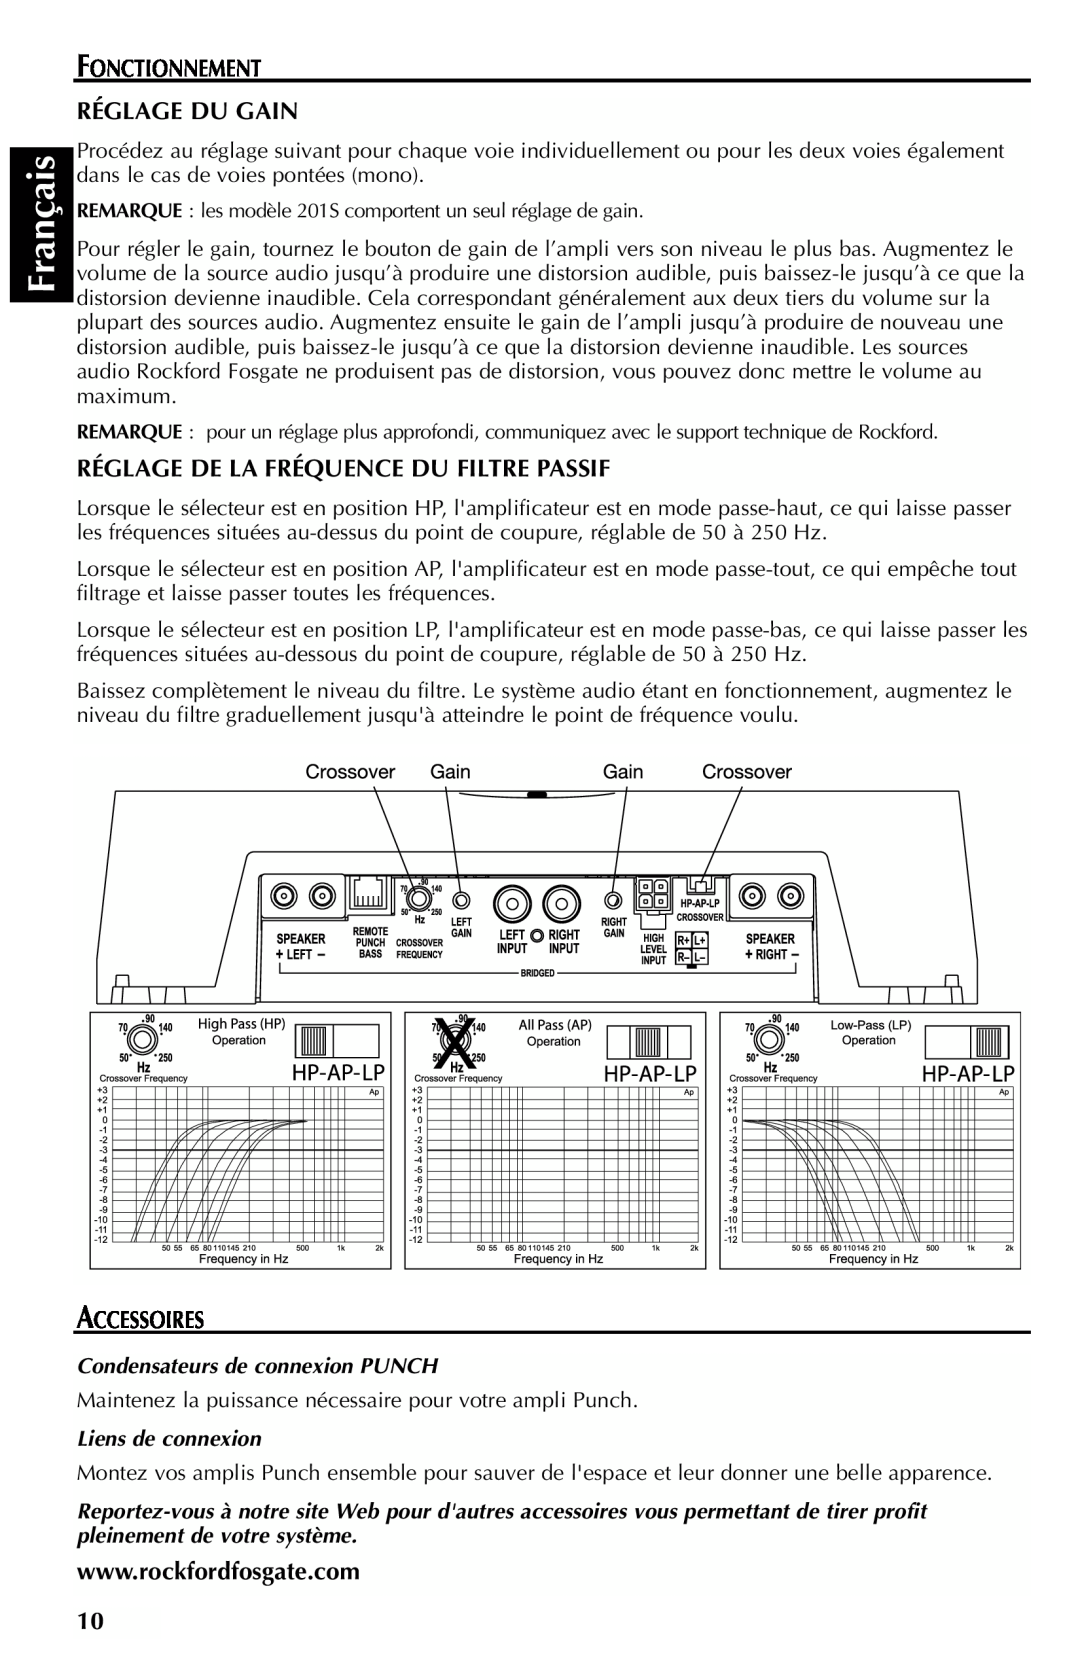 Rockford Fosgate 301SP Français, Fonctionnement Réglage Du Gain, Réglage De La Fréquence Du Filtre Passif, Accessoires 